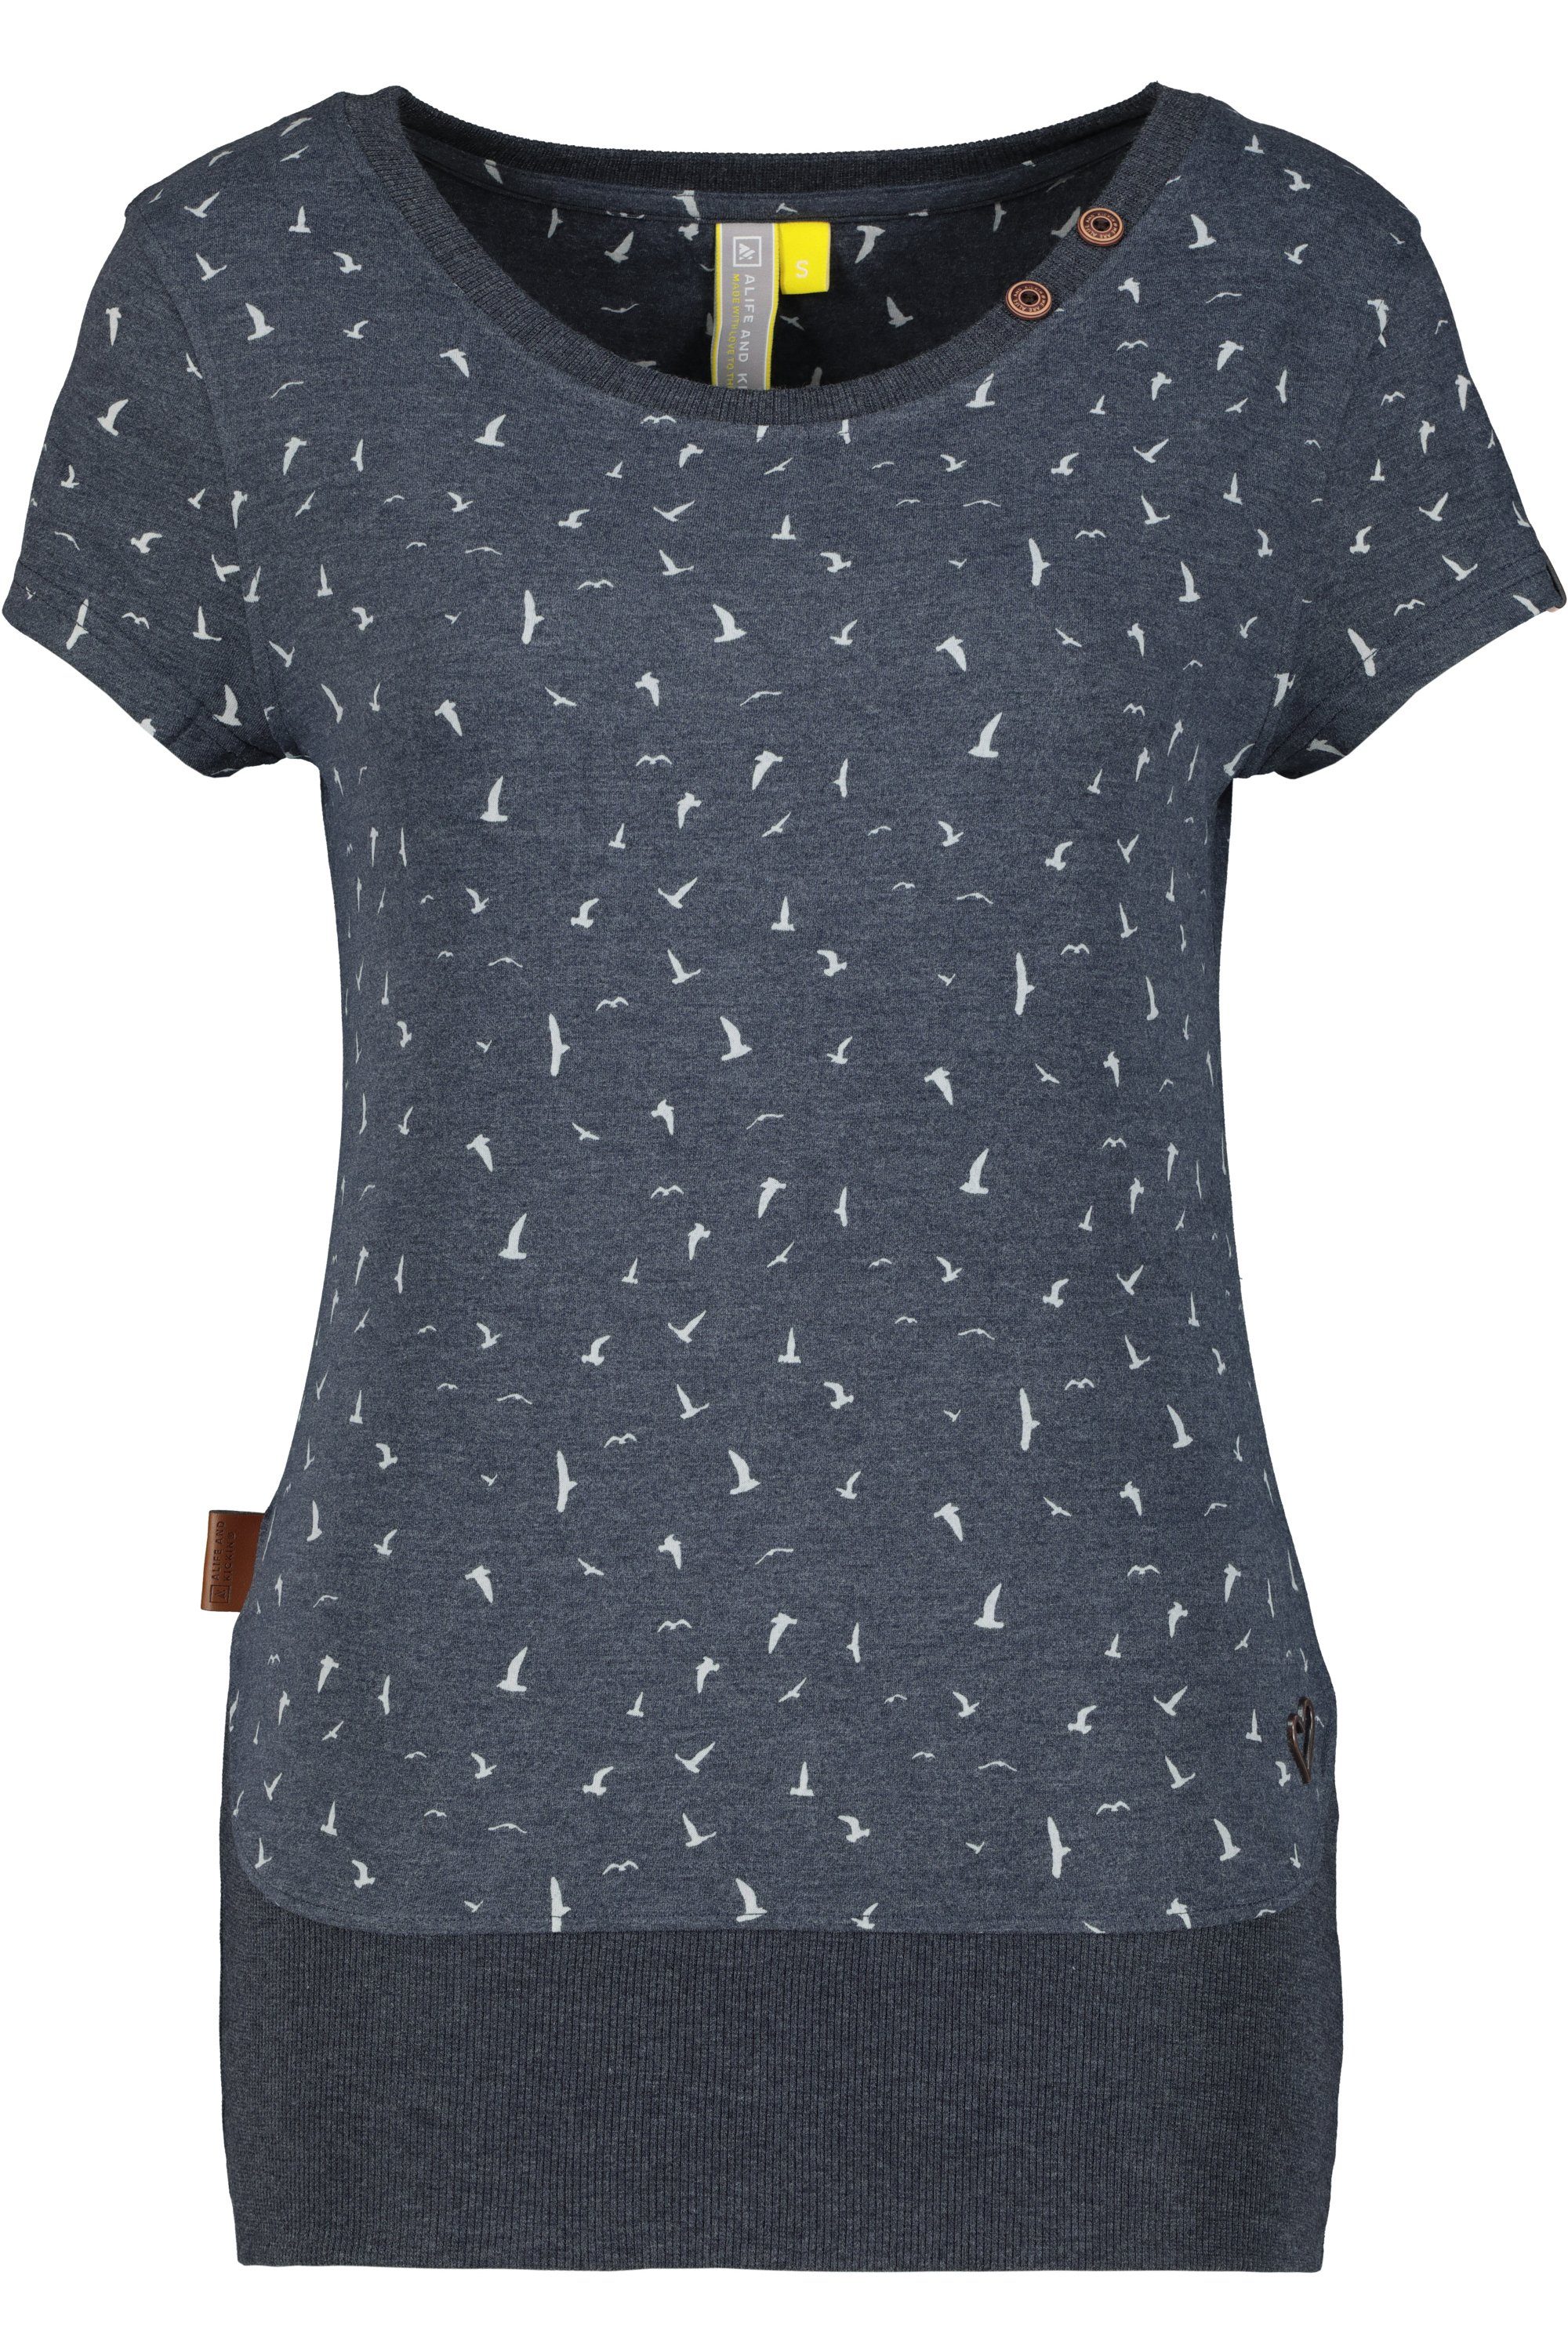 CocoAK Alife Kickin & Damen T-Shirt T-Shirt marine